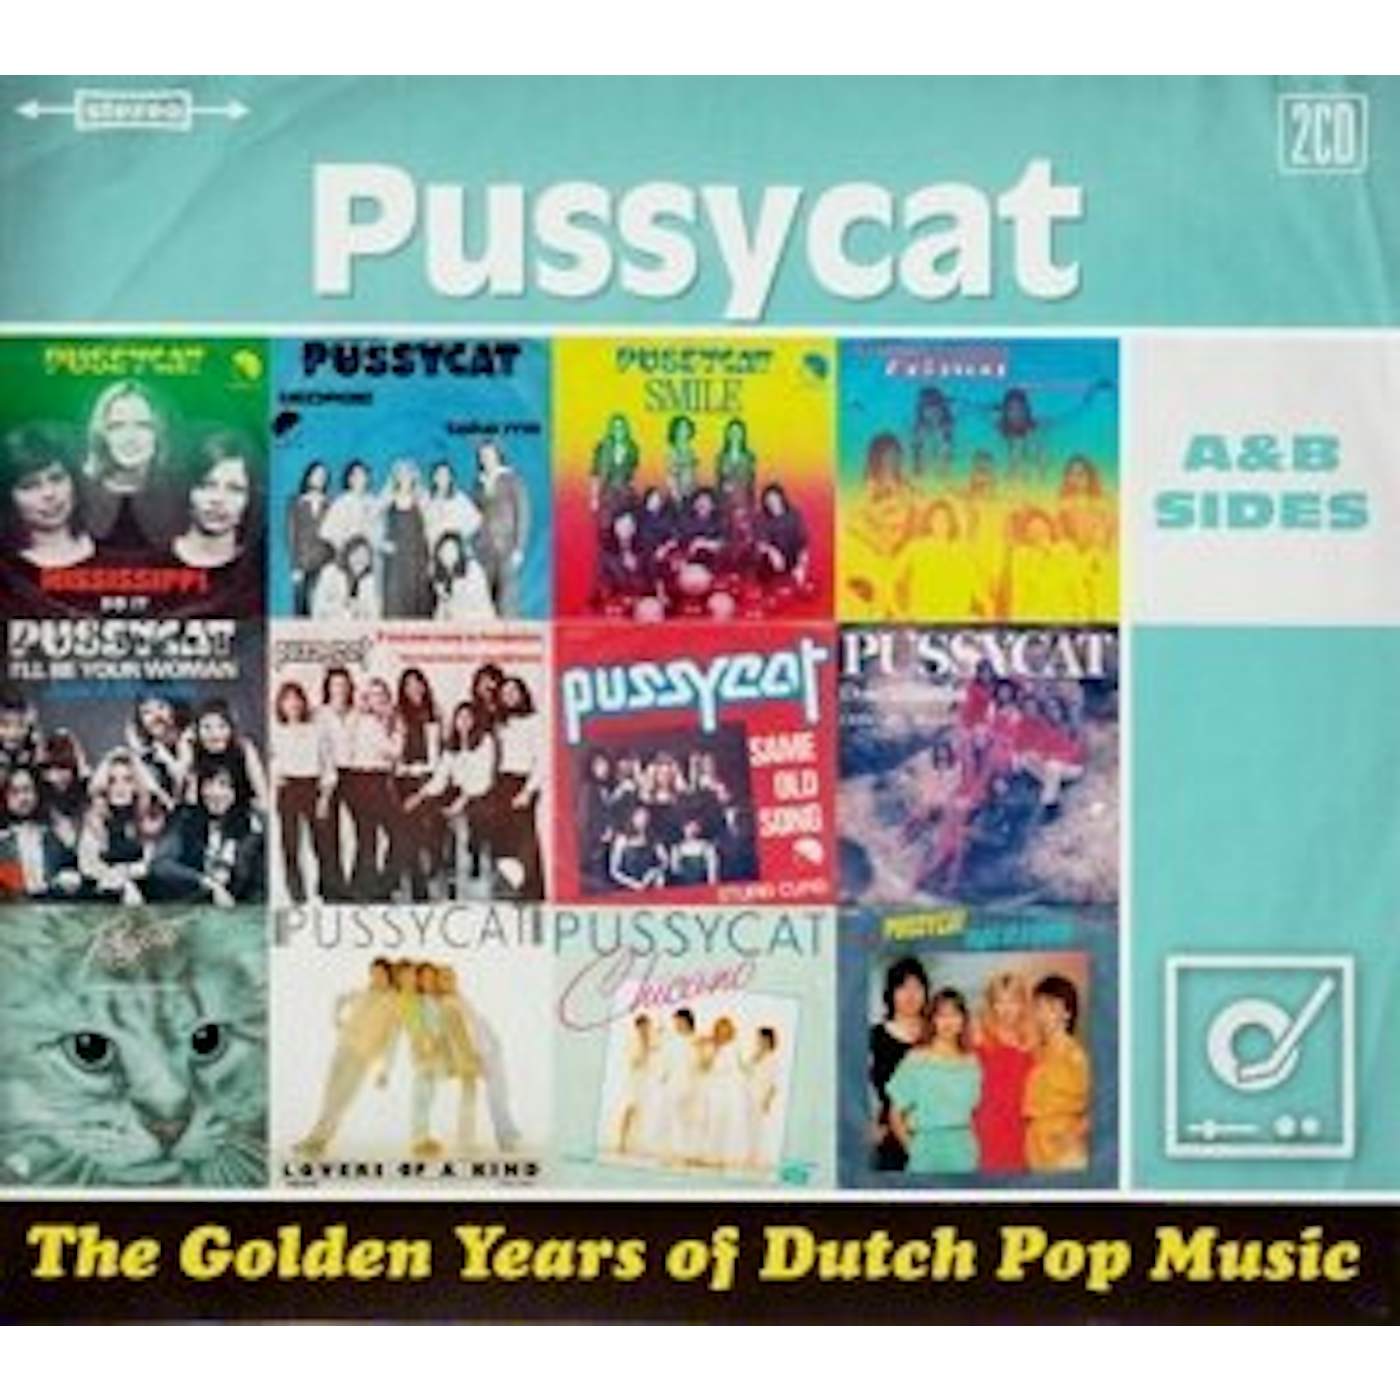 Pussycat GOLDEN YEARS OF DUTCH POP MUSIC CD